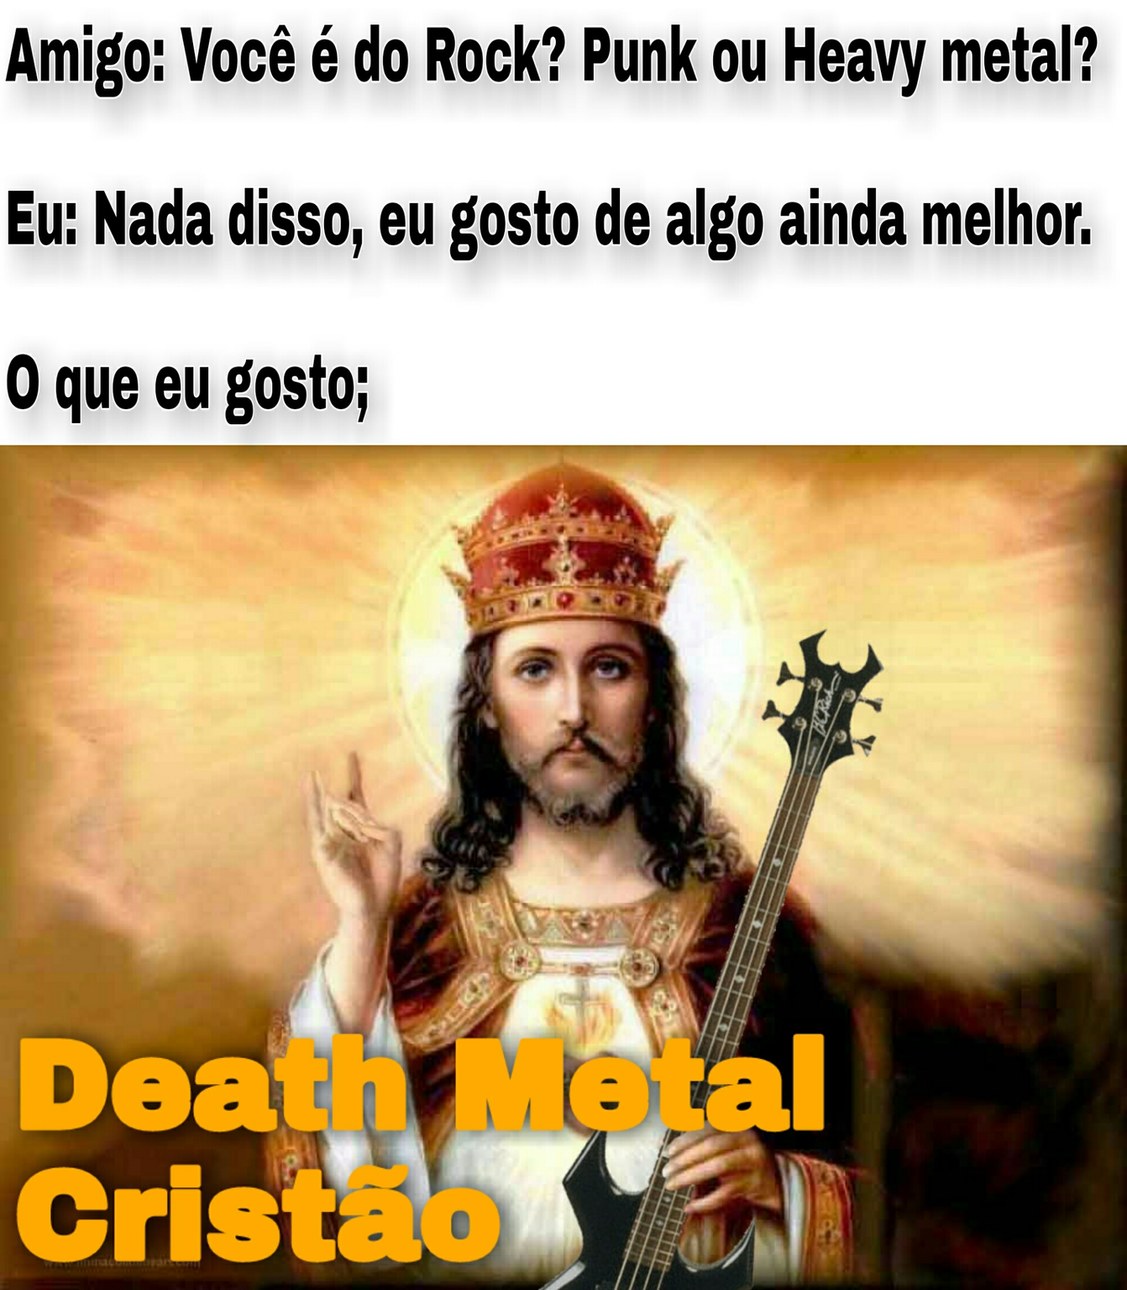 Death Metal Cristão realmente existe. - meme